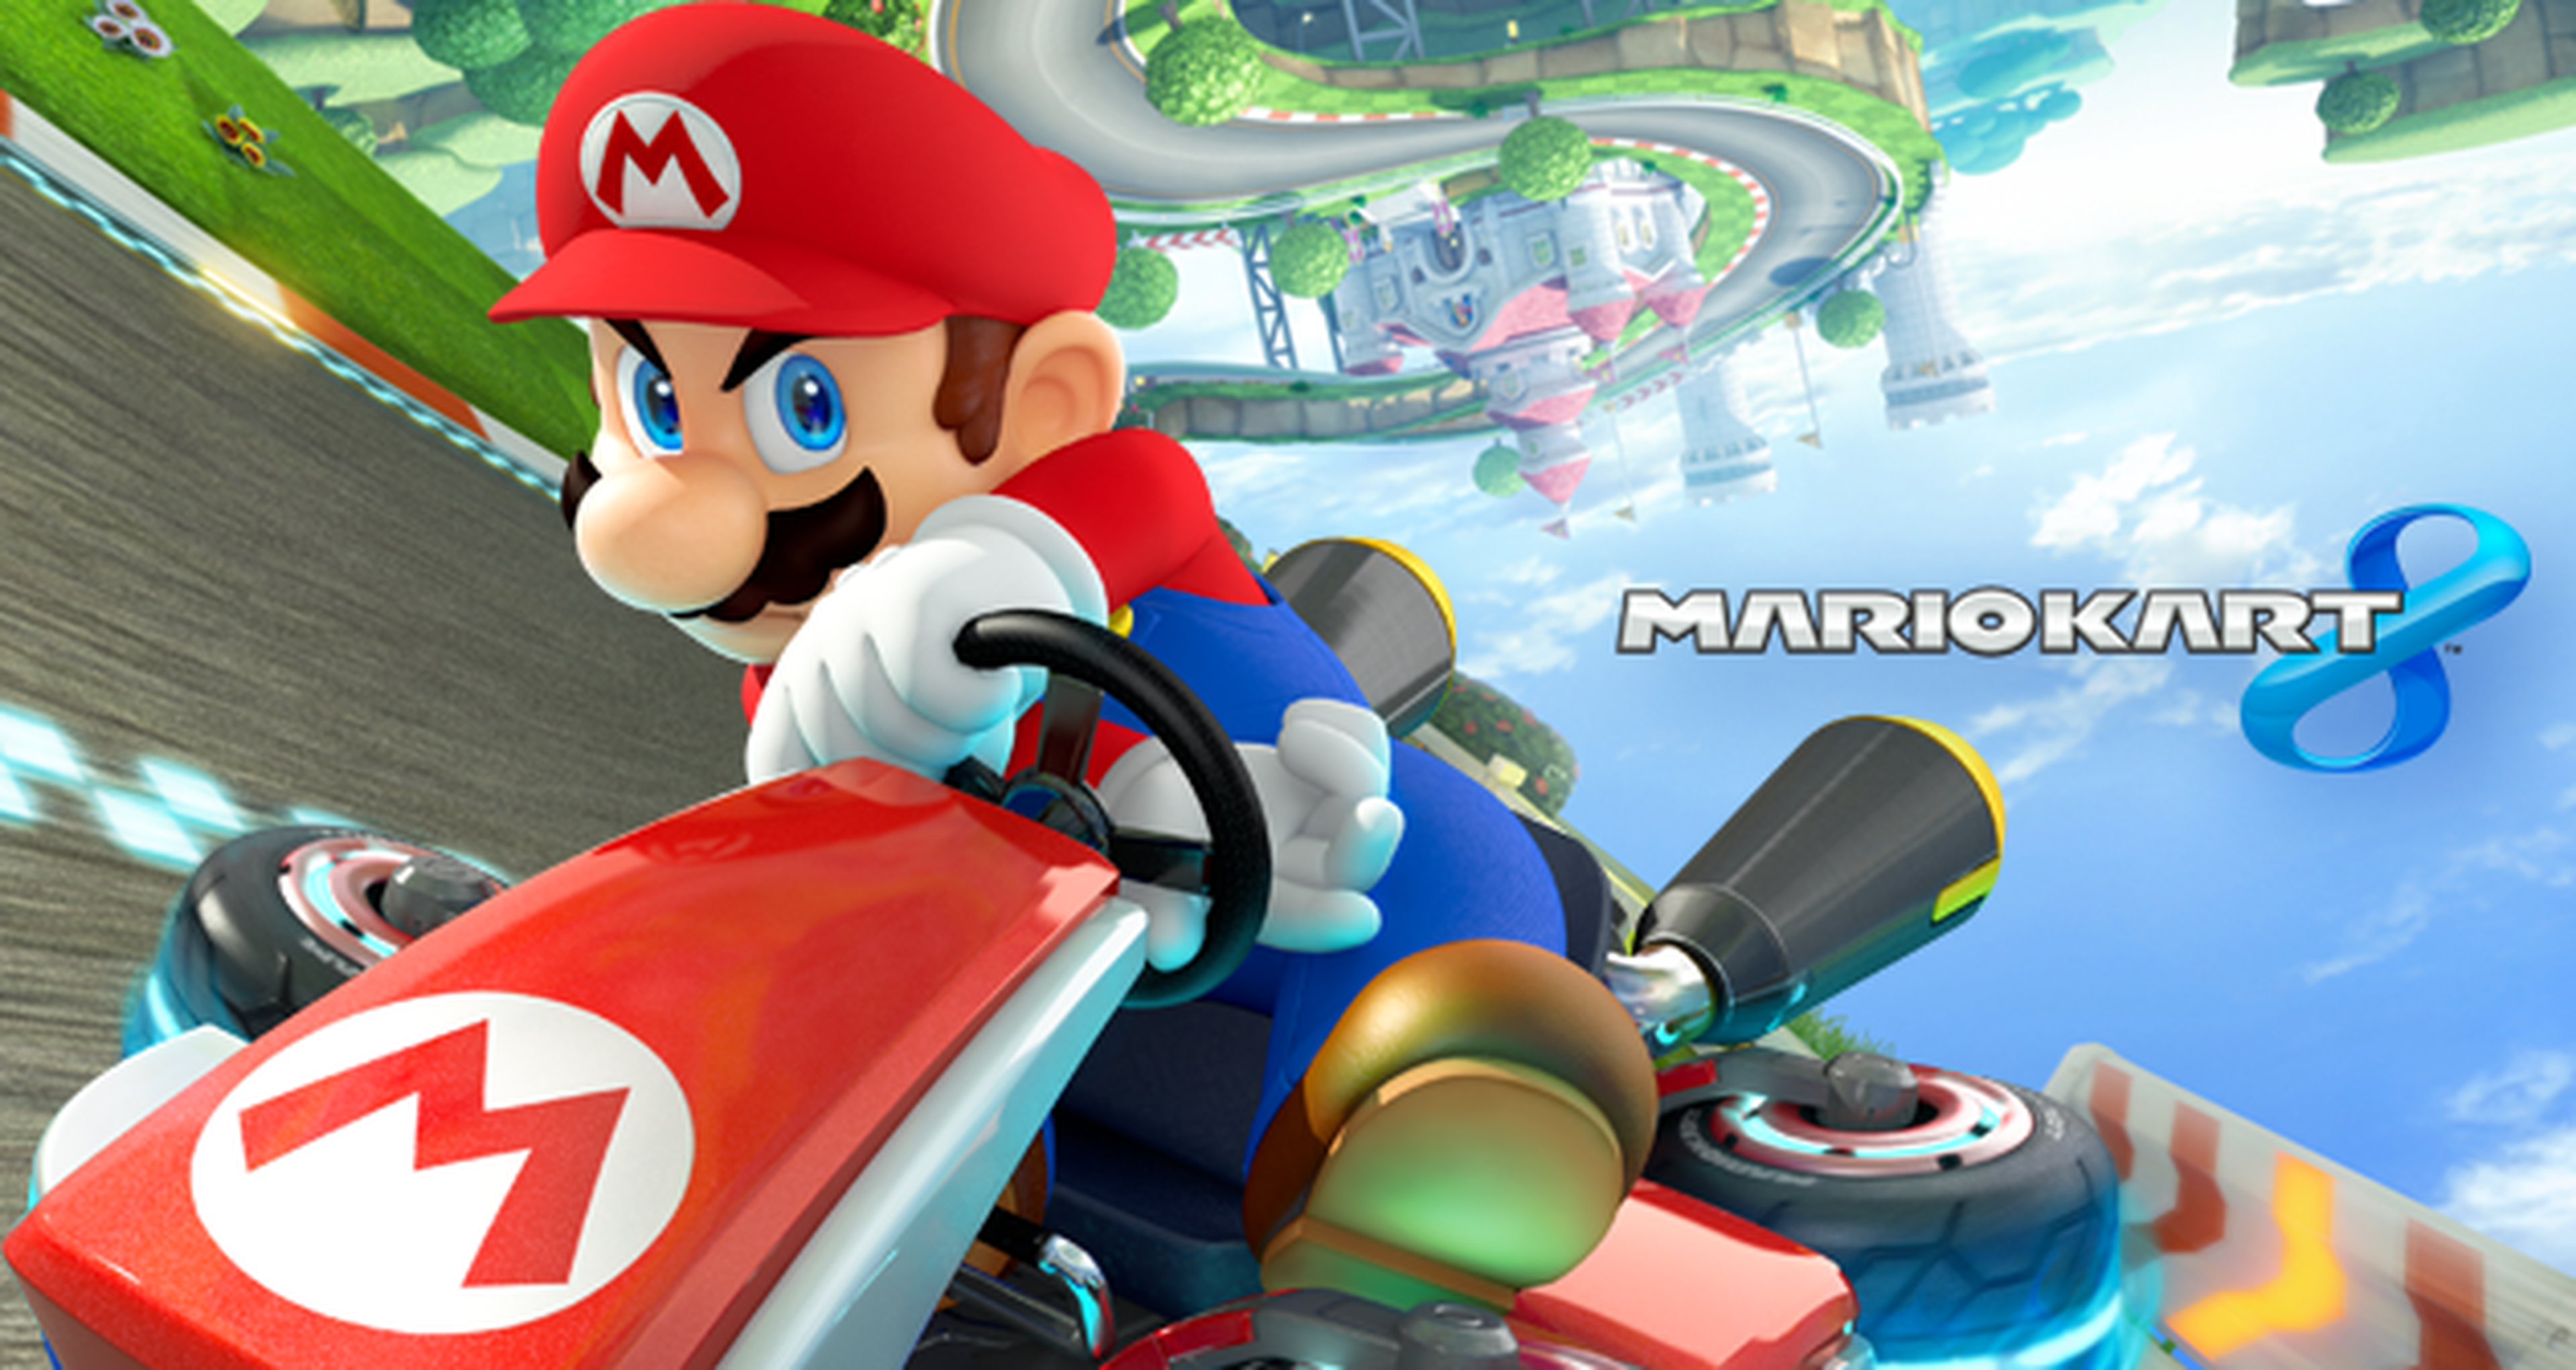 Torneo Mario Kart 8 a 200cc: Resultados Semana 2 y Convocatoria Semana 3